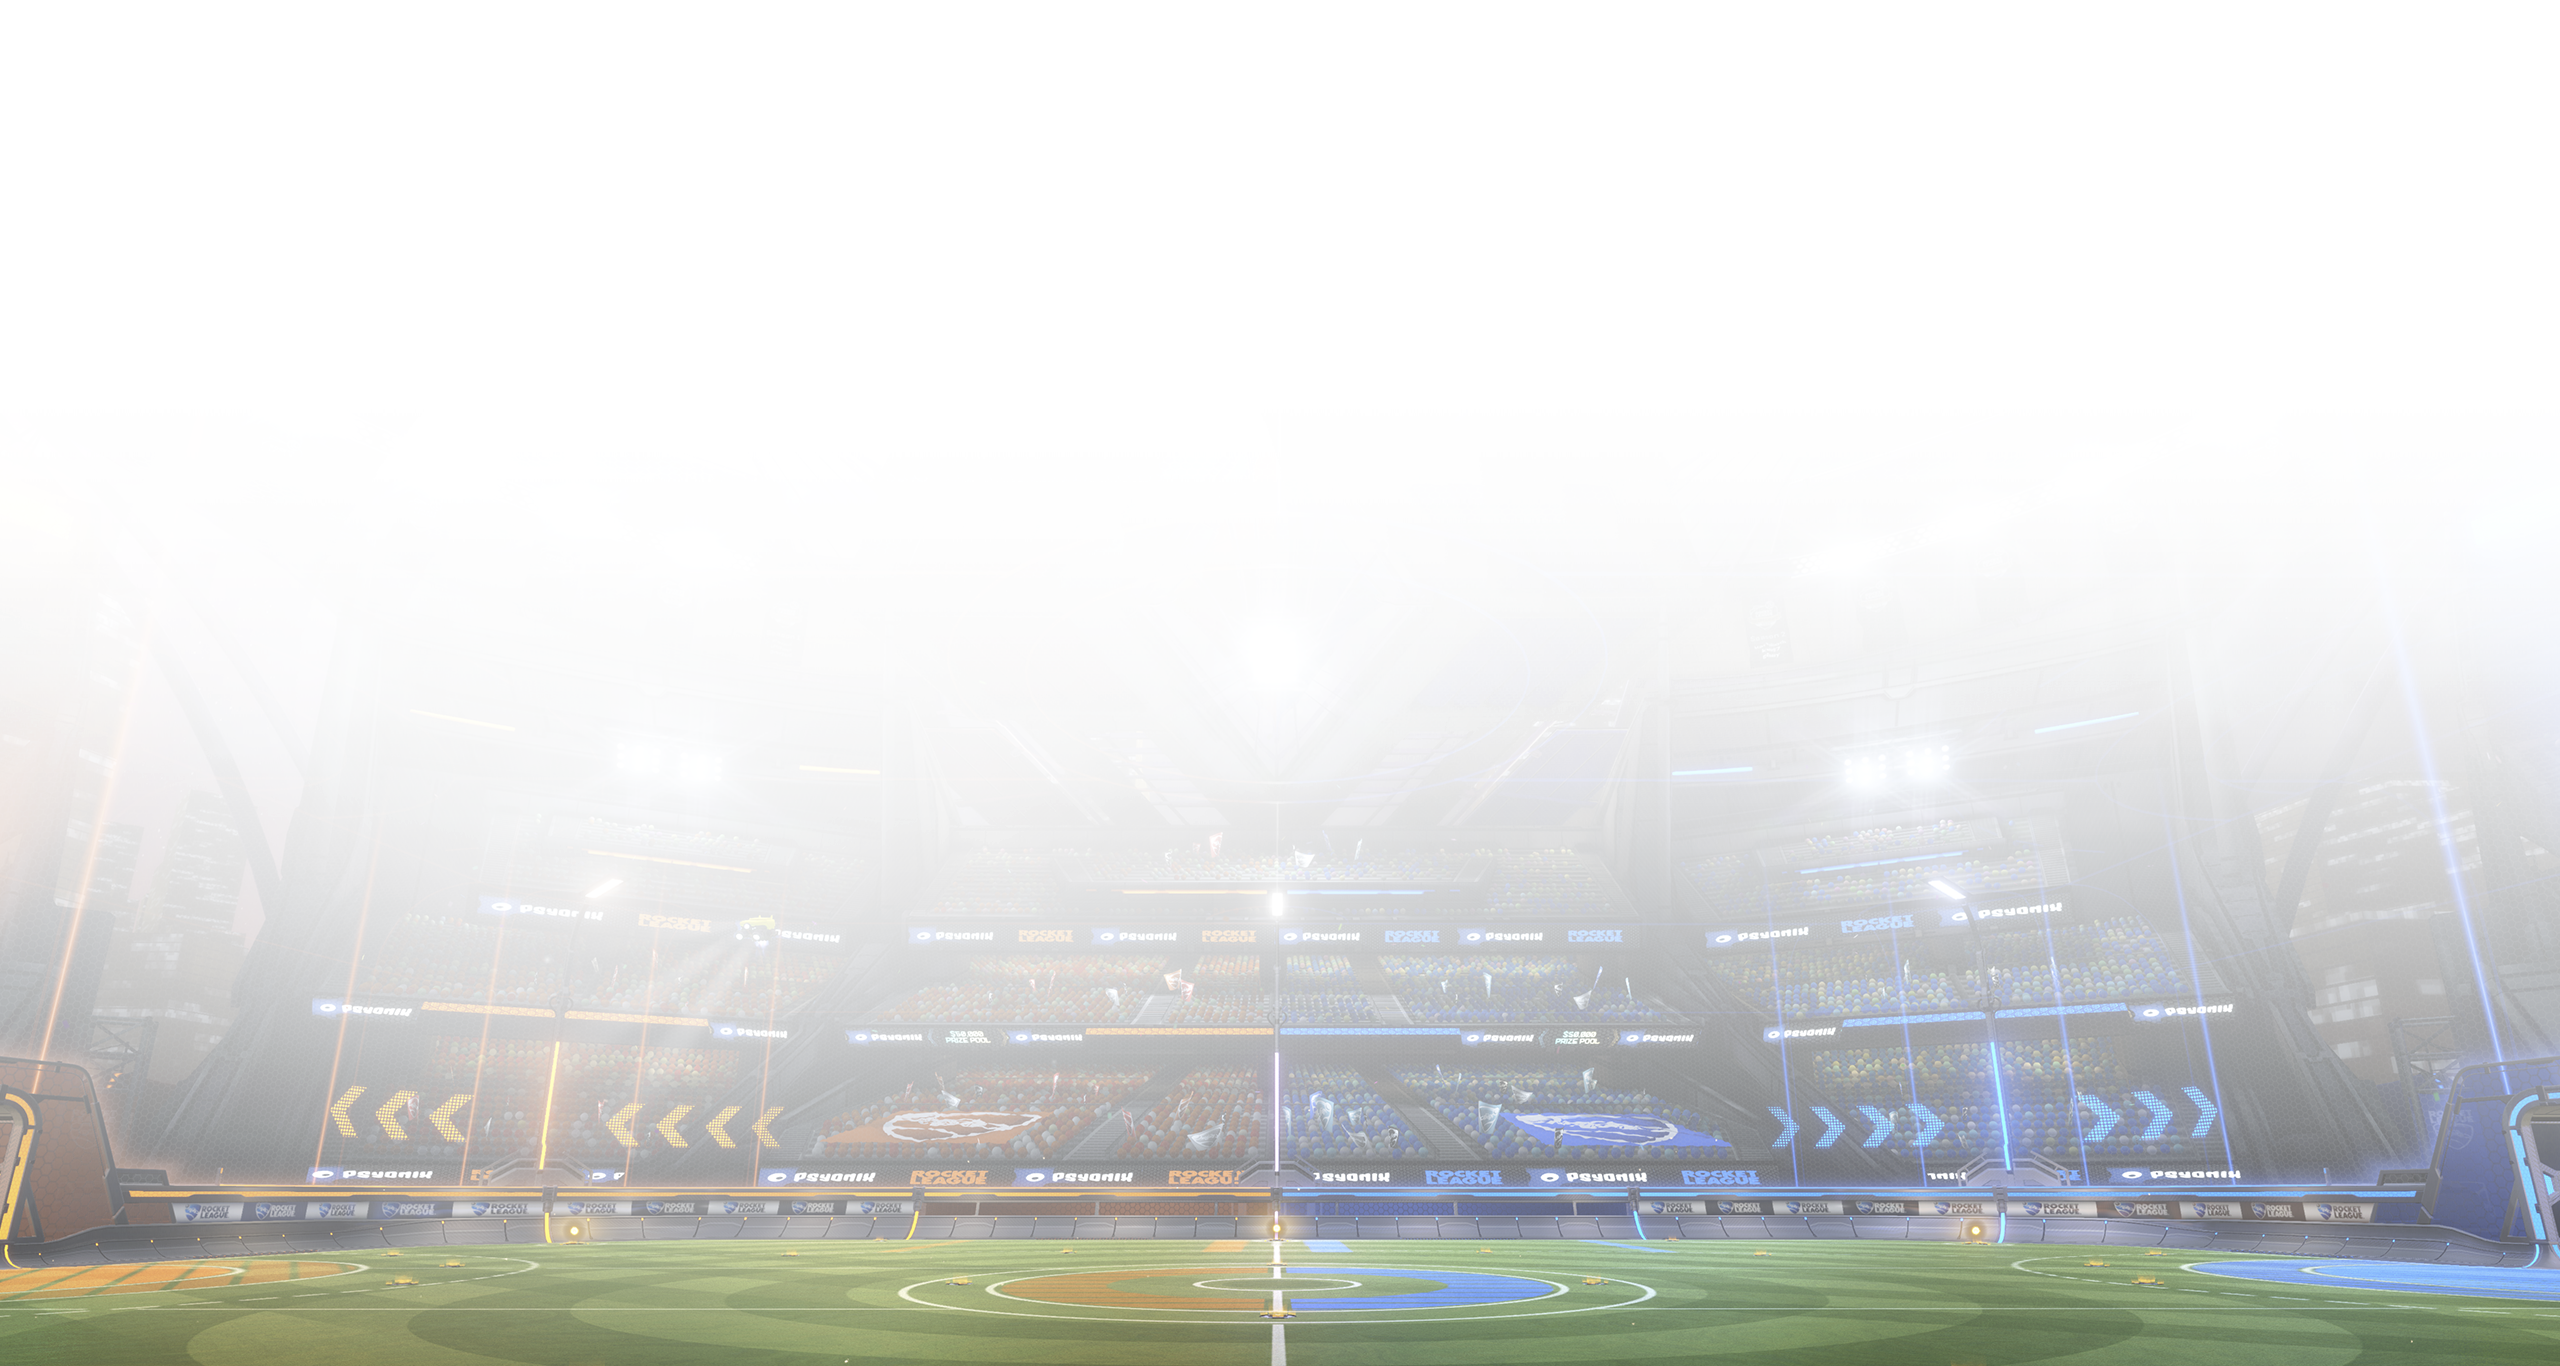 Rocket League – snímek obrazovky zachycující hřiště obklopené tribunami